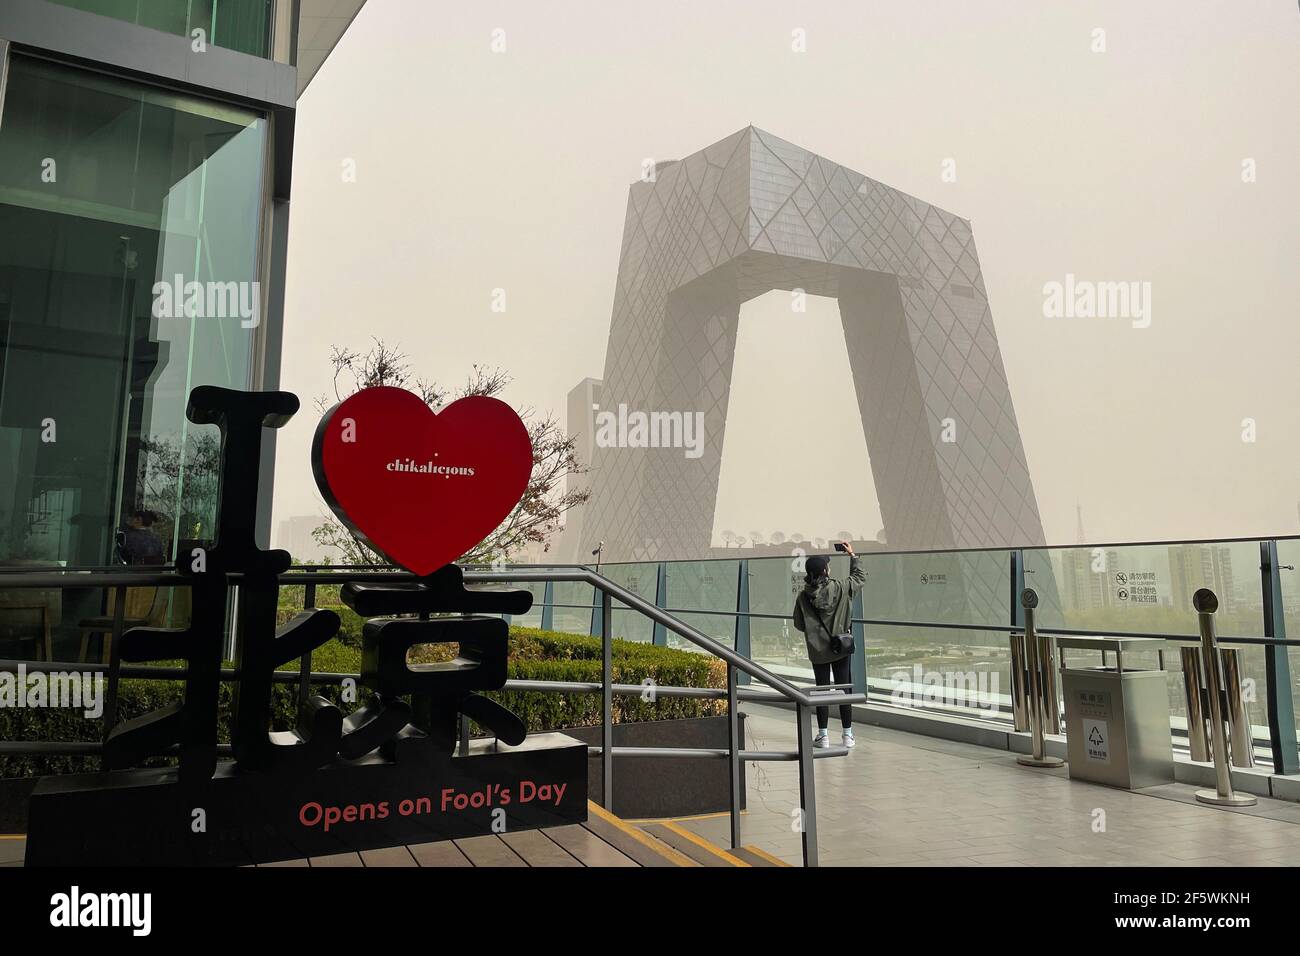 Peking, China. März 2021, 28th. Ein dicker Dunst steigt auf Peking herab, während ein Sandsturm die Stadt bedeckt. Chinas nationales Observatorium gab einen gelben Alarm für Sandstürme im nördlichen Teil des Landes. Kredit: SOPA Images Limited/Alamy Live Nachrichten Stockfoto